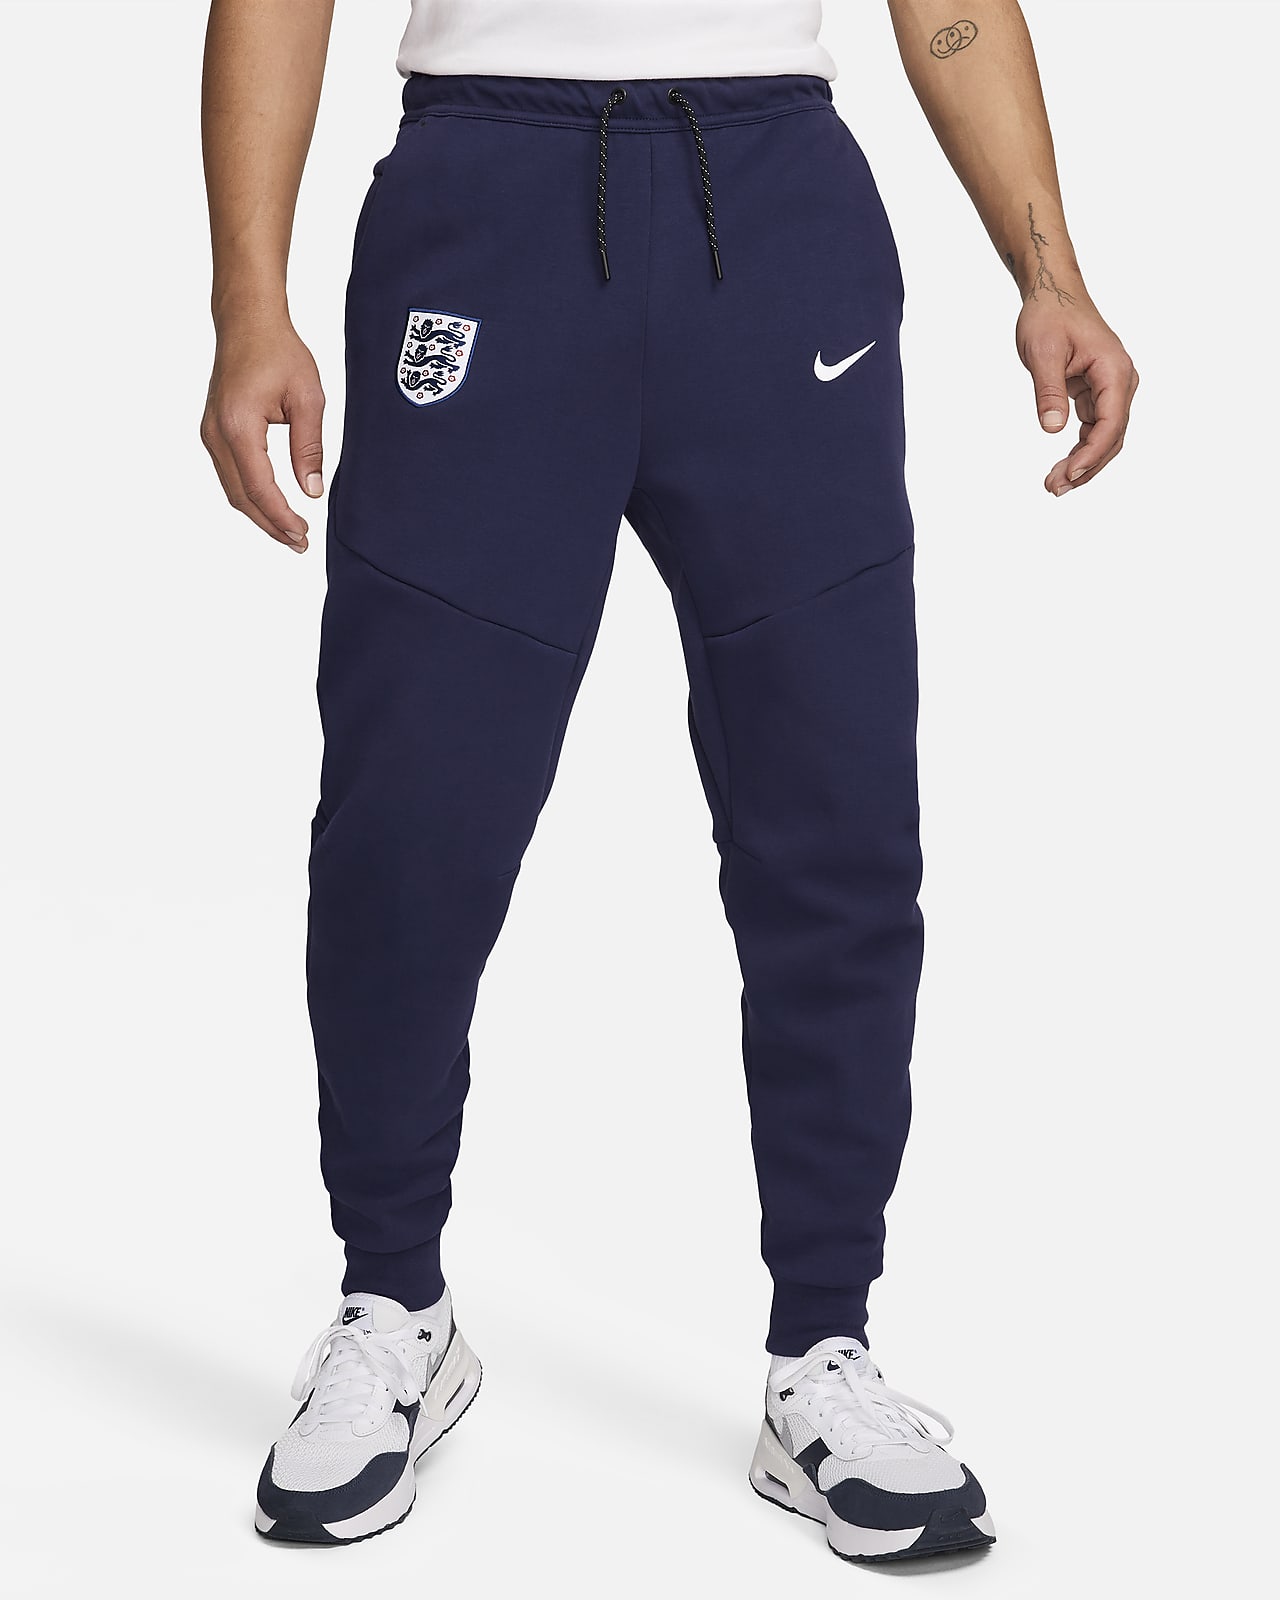 Ανδρικό ποδοσφαιρικό παντελόνι φόρμας Nike Αγγλία Tech Fleece